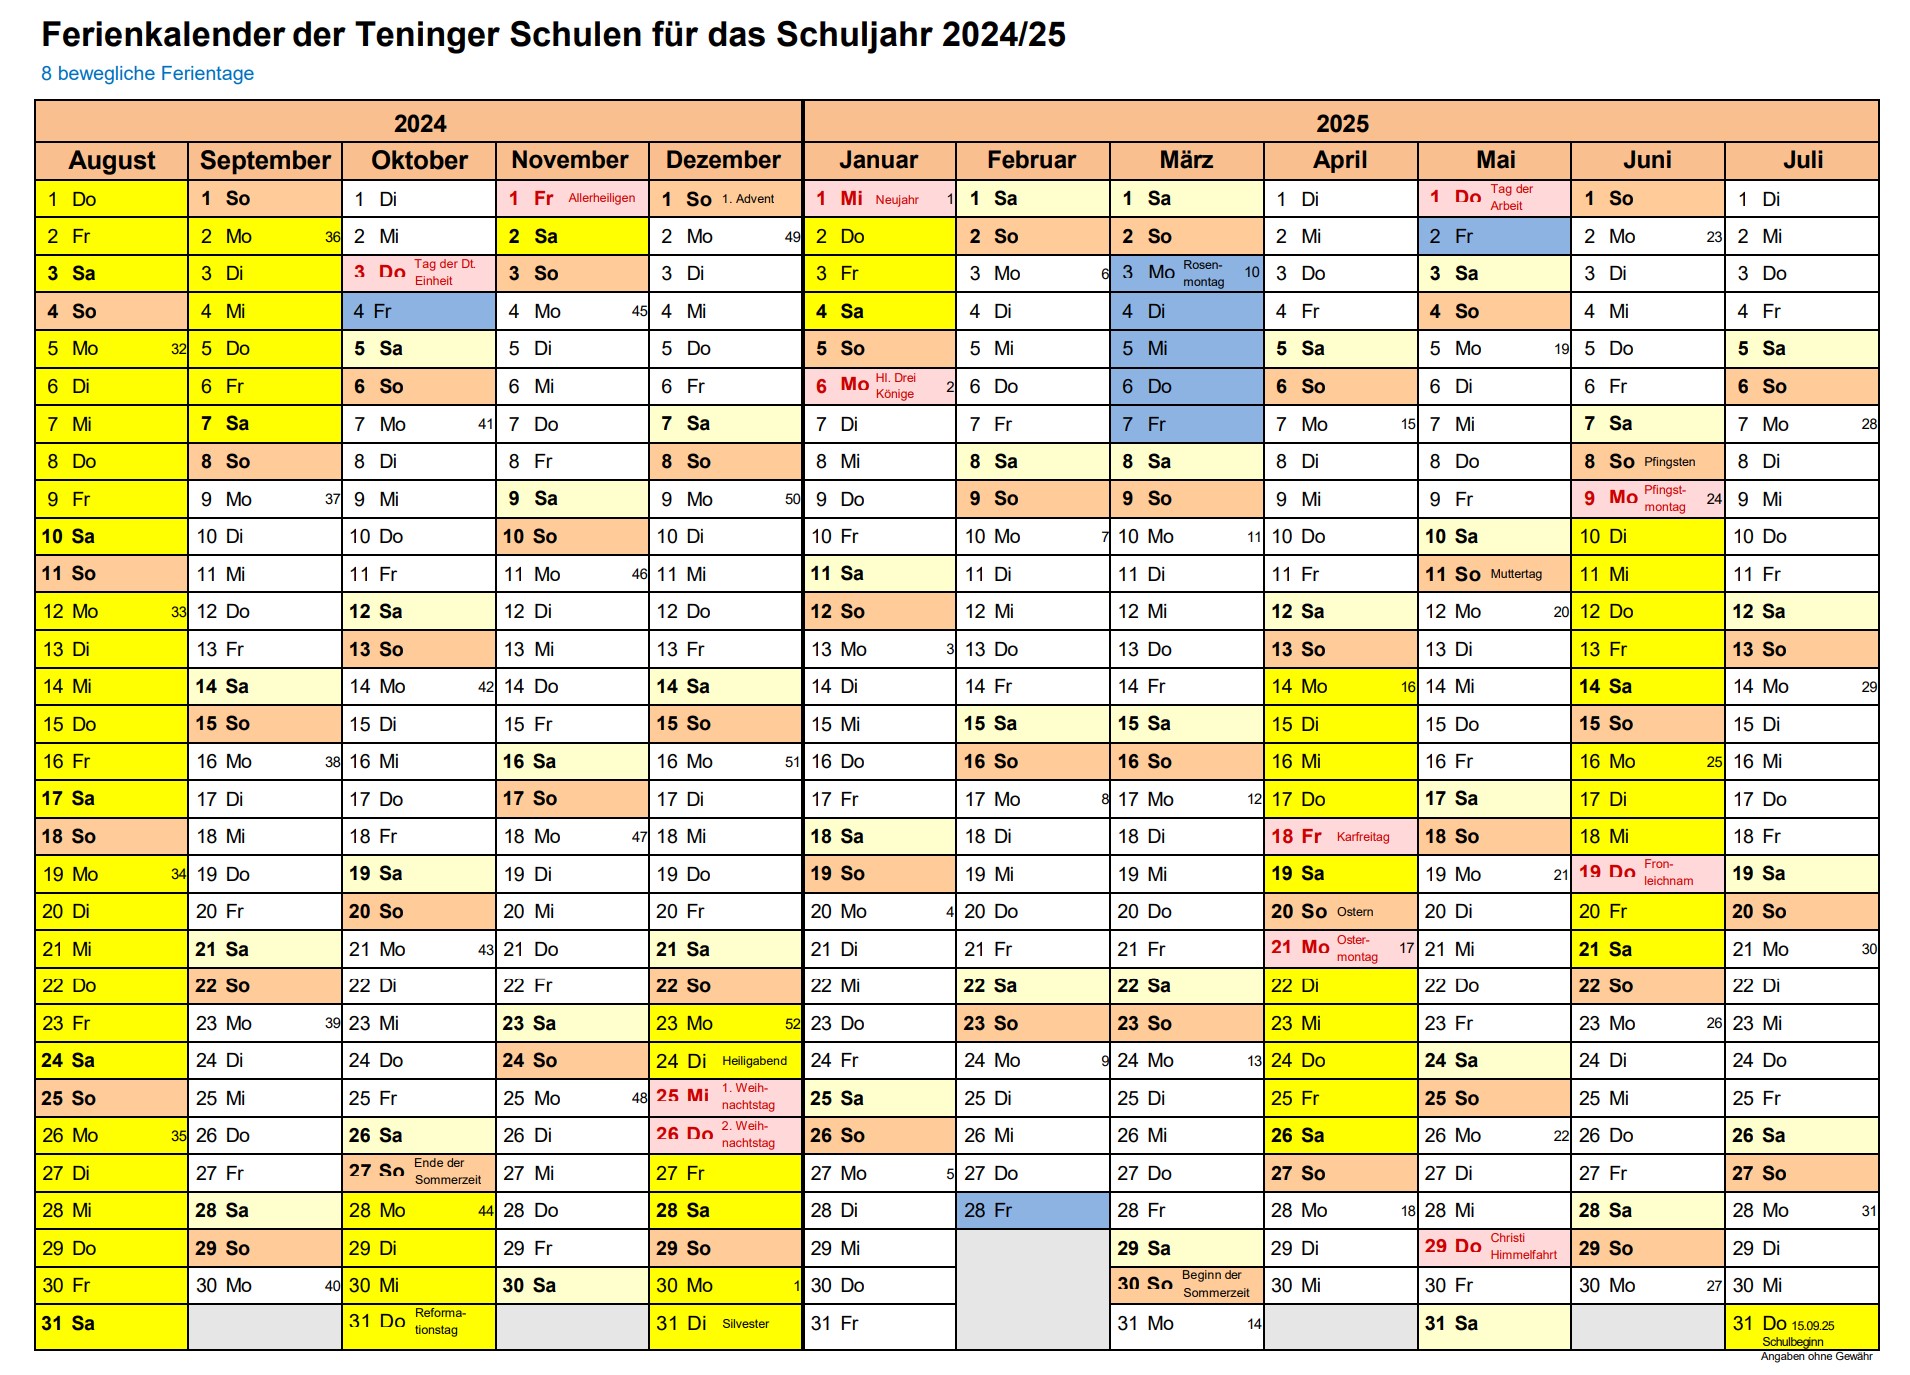 Ferienkalender 2024 2025 TFS Teningen